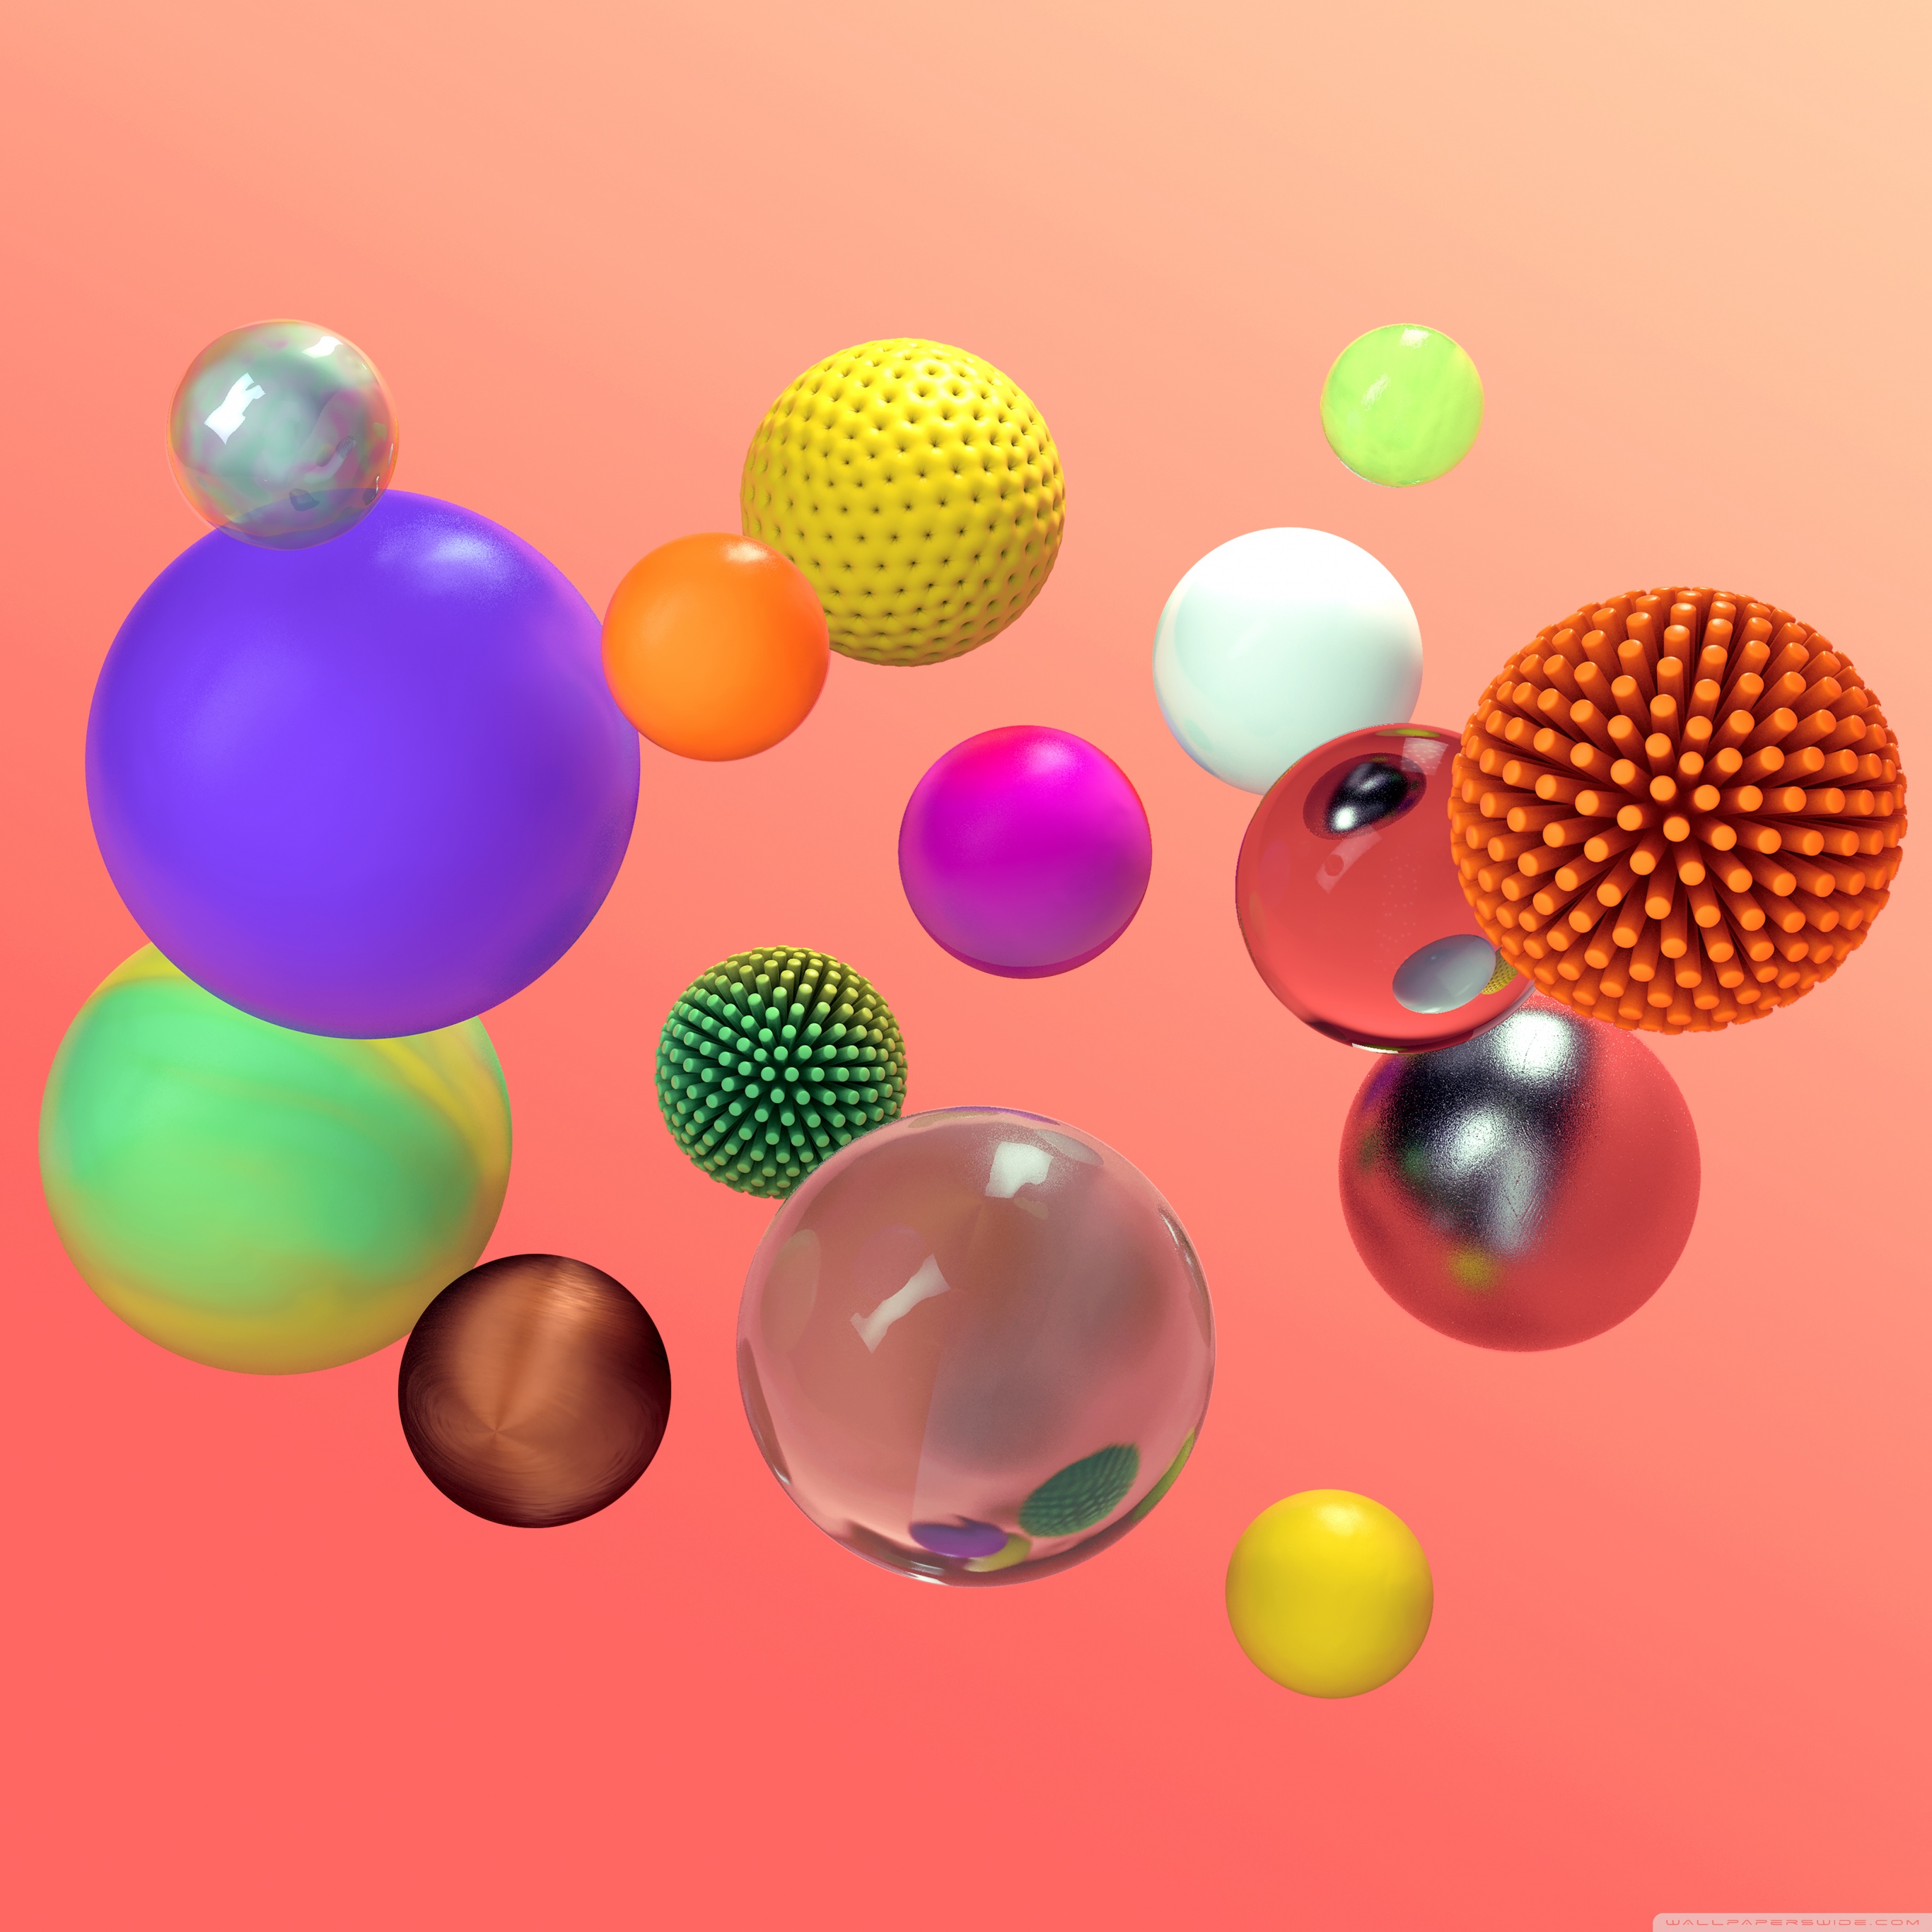 Шарики 3 d. Абстракция шары. 3d шары. Разноцветные 3д шары. Фотообои разноцветные 3d шары.